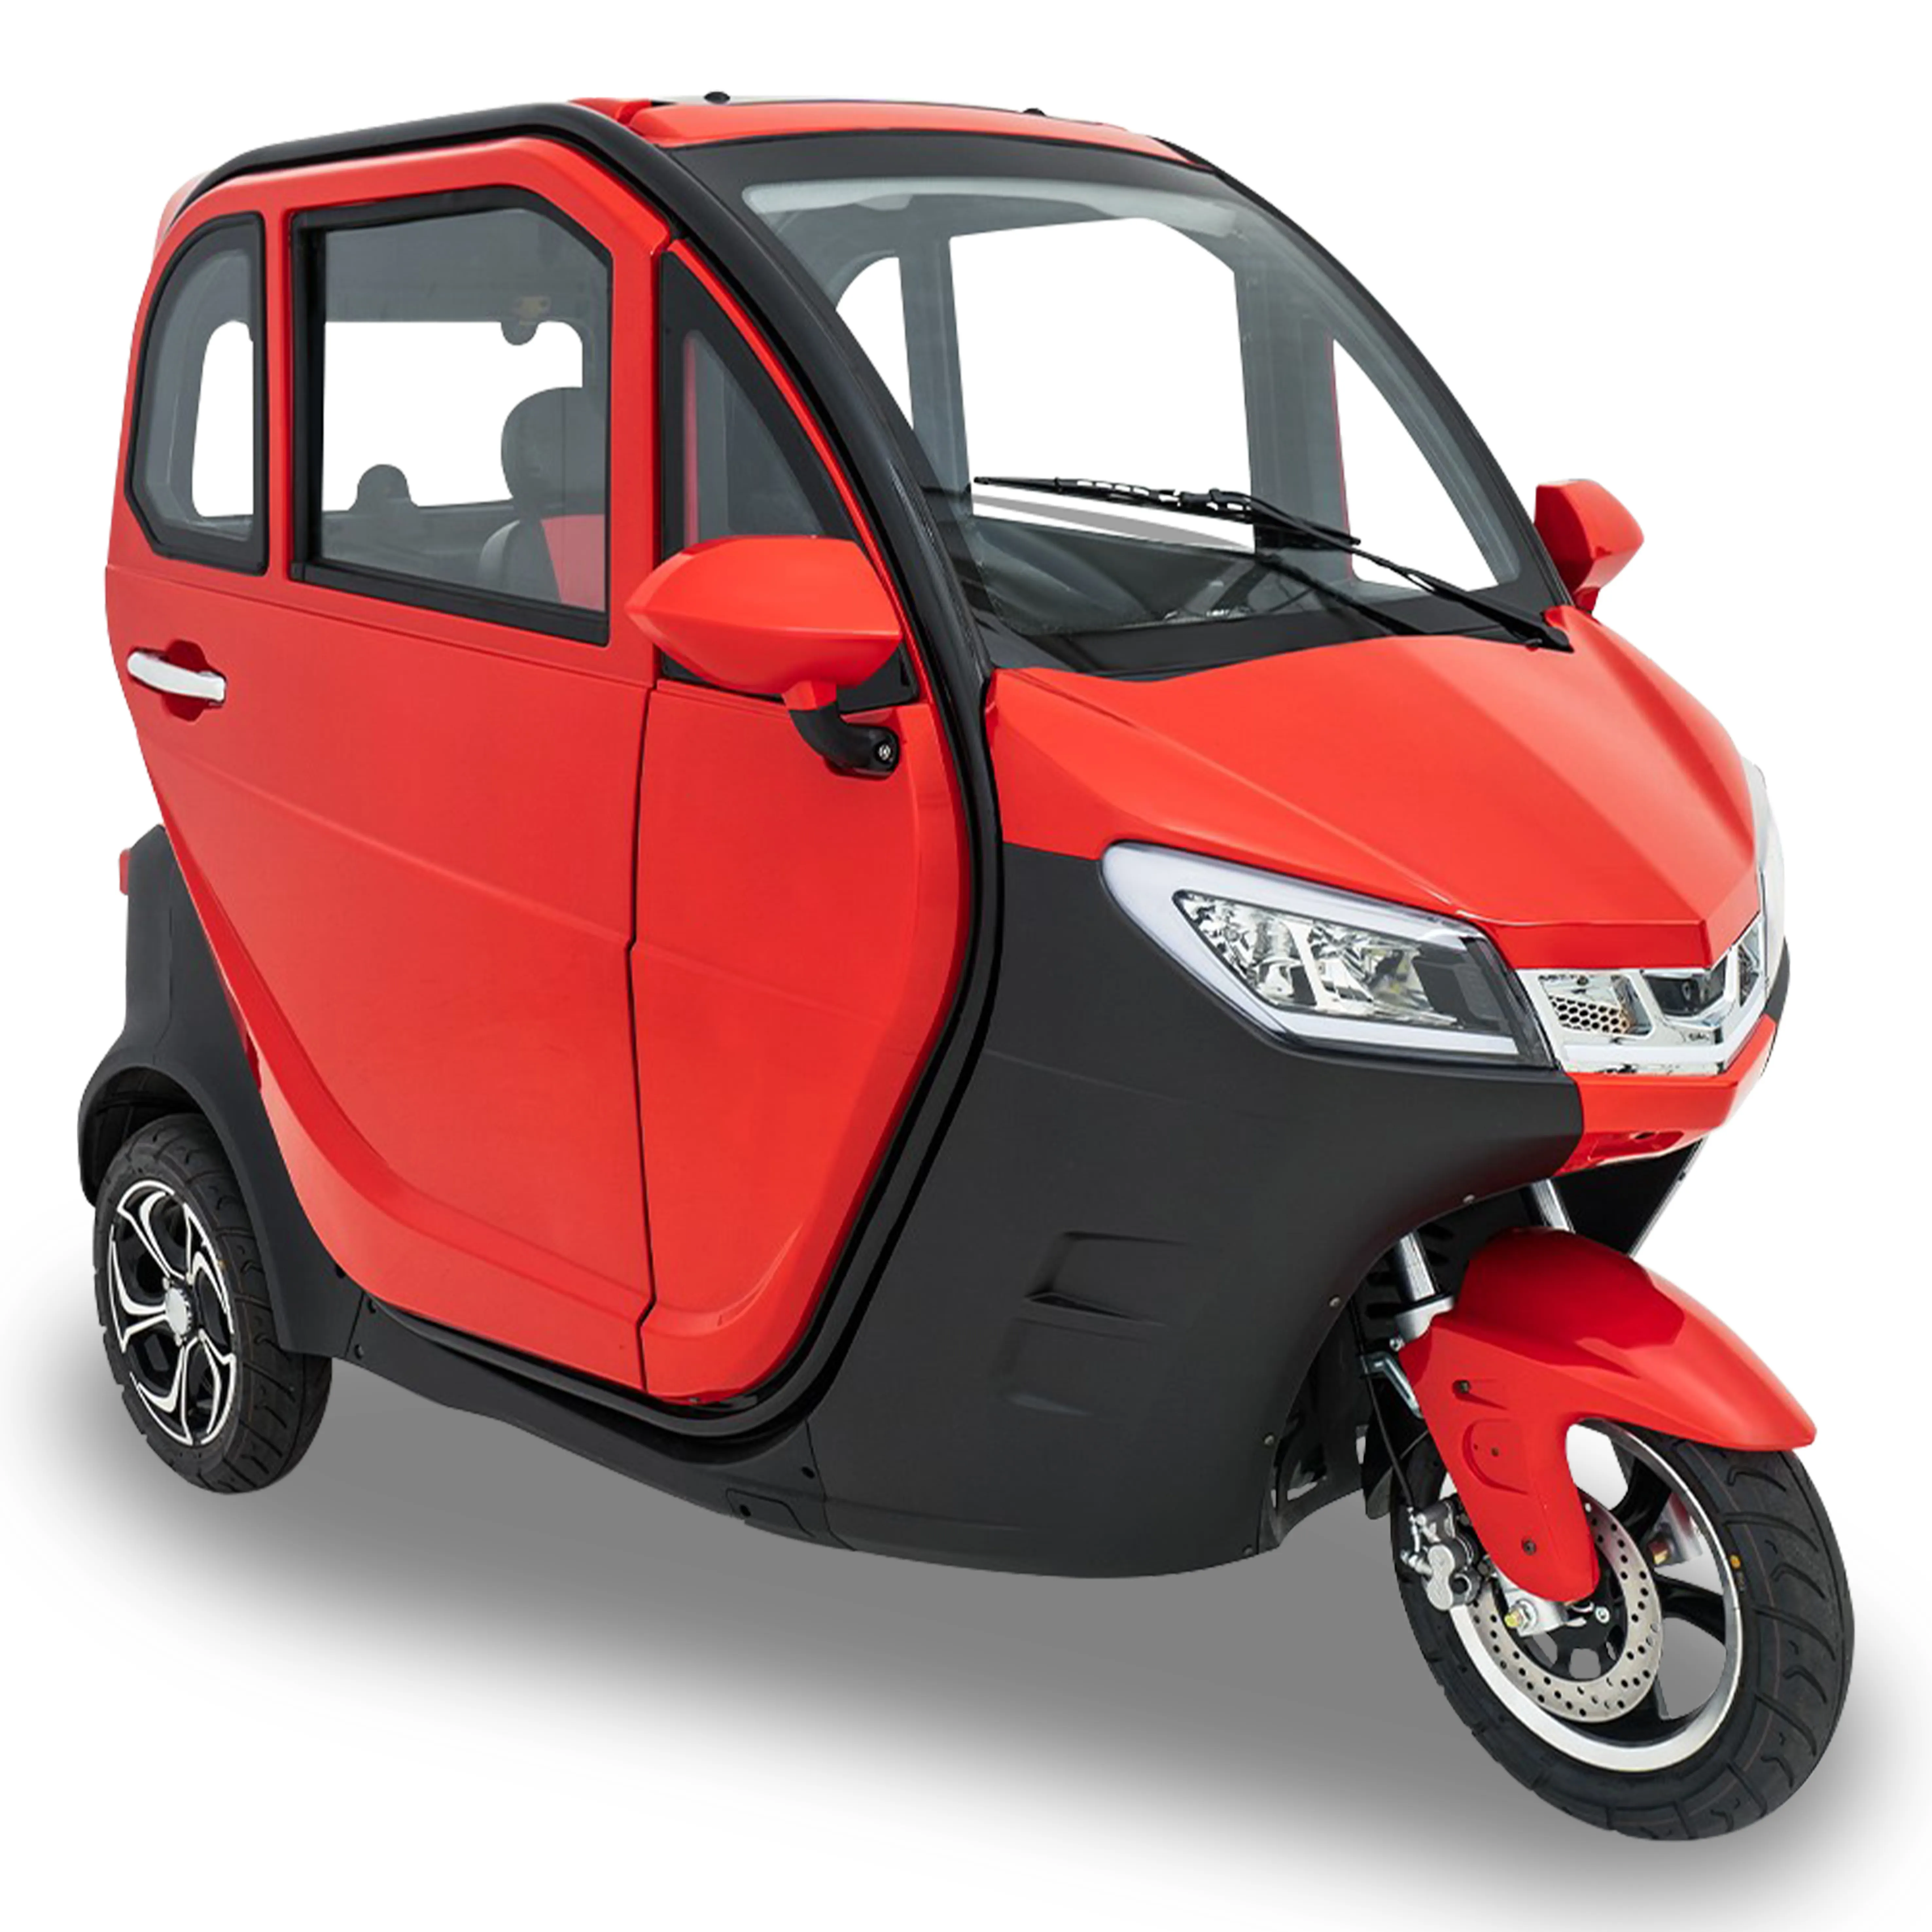 Triciclo con Motor de gasolina y combustible completamente cerrado para llevar pasajeros, motocicleta de tres ruedas para Taxi, nuevo